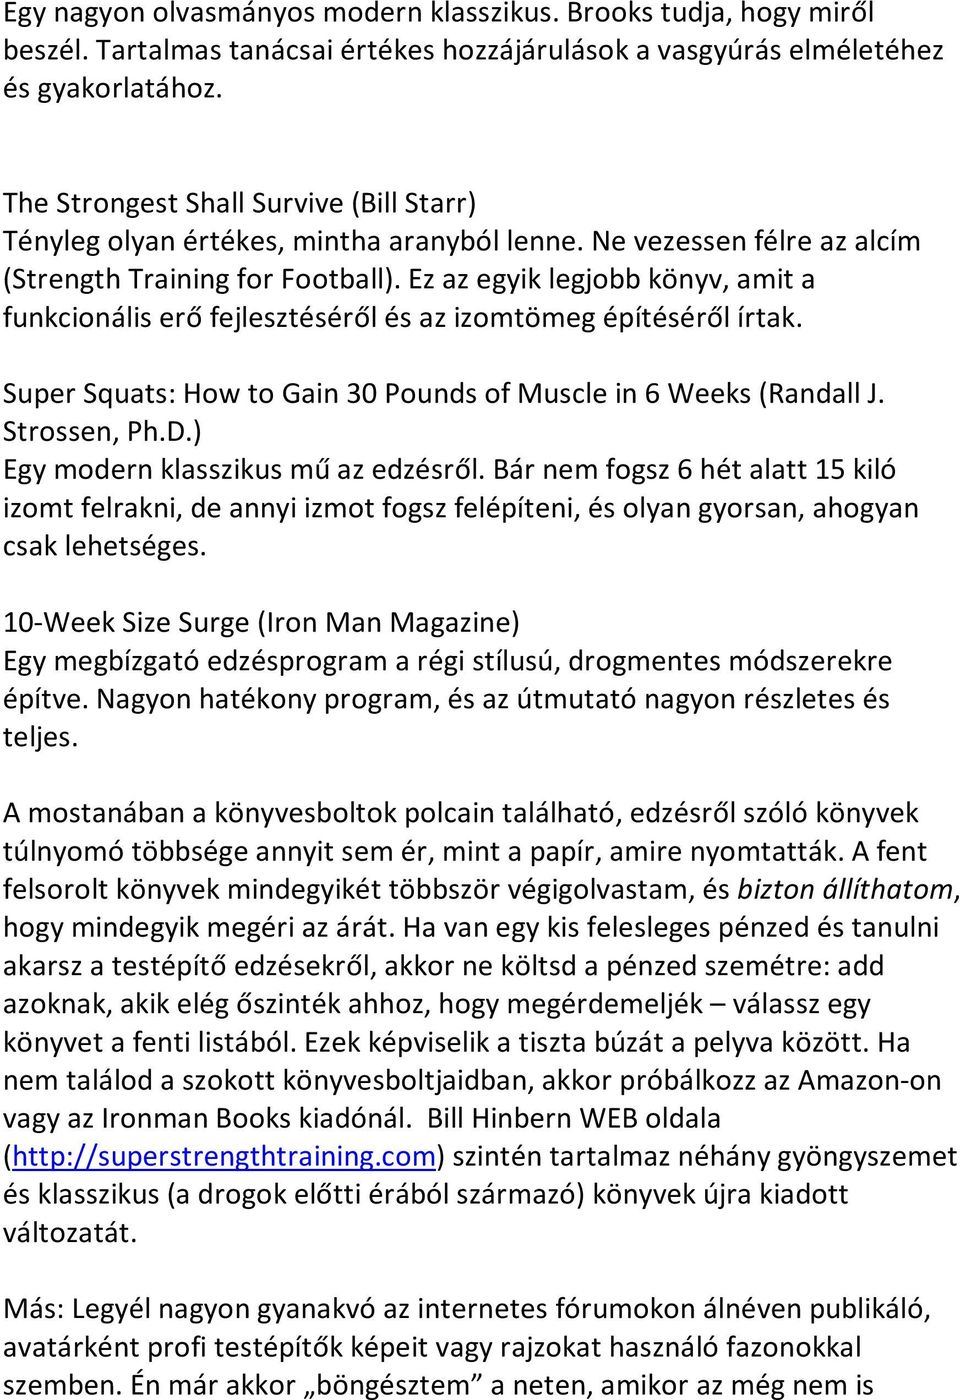 Ez az egyik legjobb könyv, amit a funkcionális erő fejlesztéséről és az izomtömeg építéséről írtak. Super Squats: How to Gain 30 Pounds of Muscle in 6 Weeks (Randall J. Strossen, Ph.D.